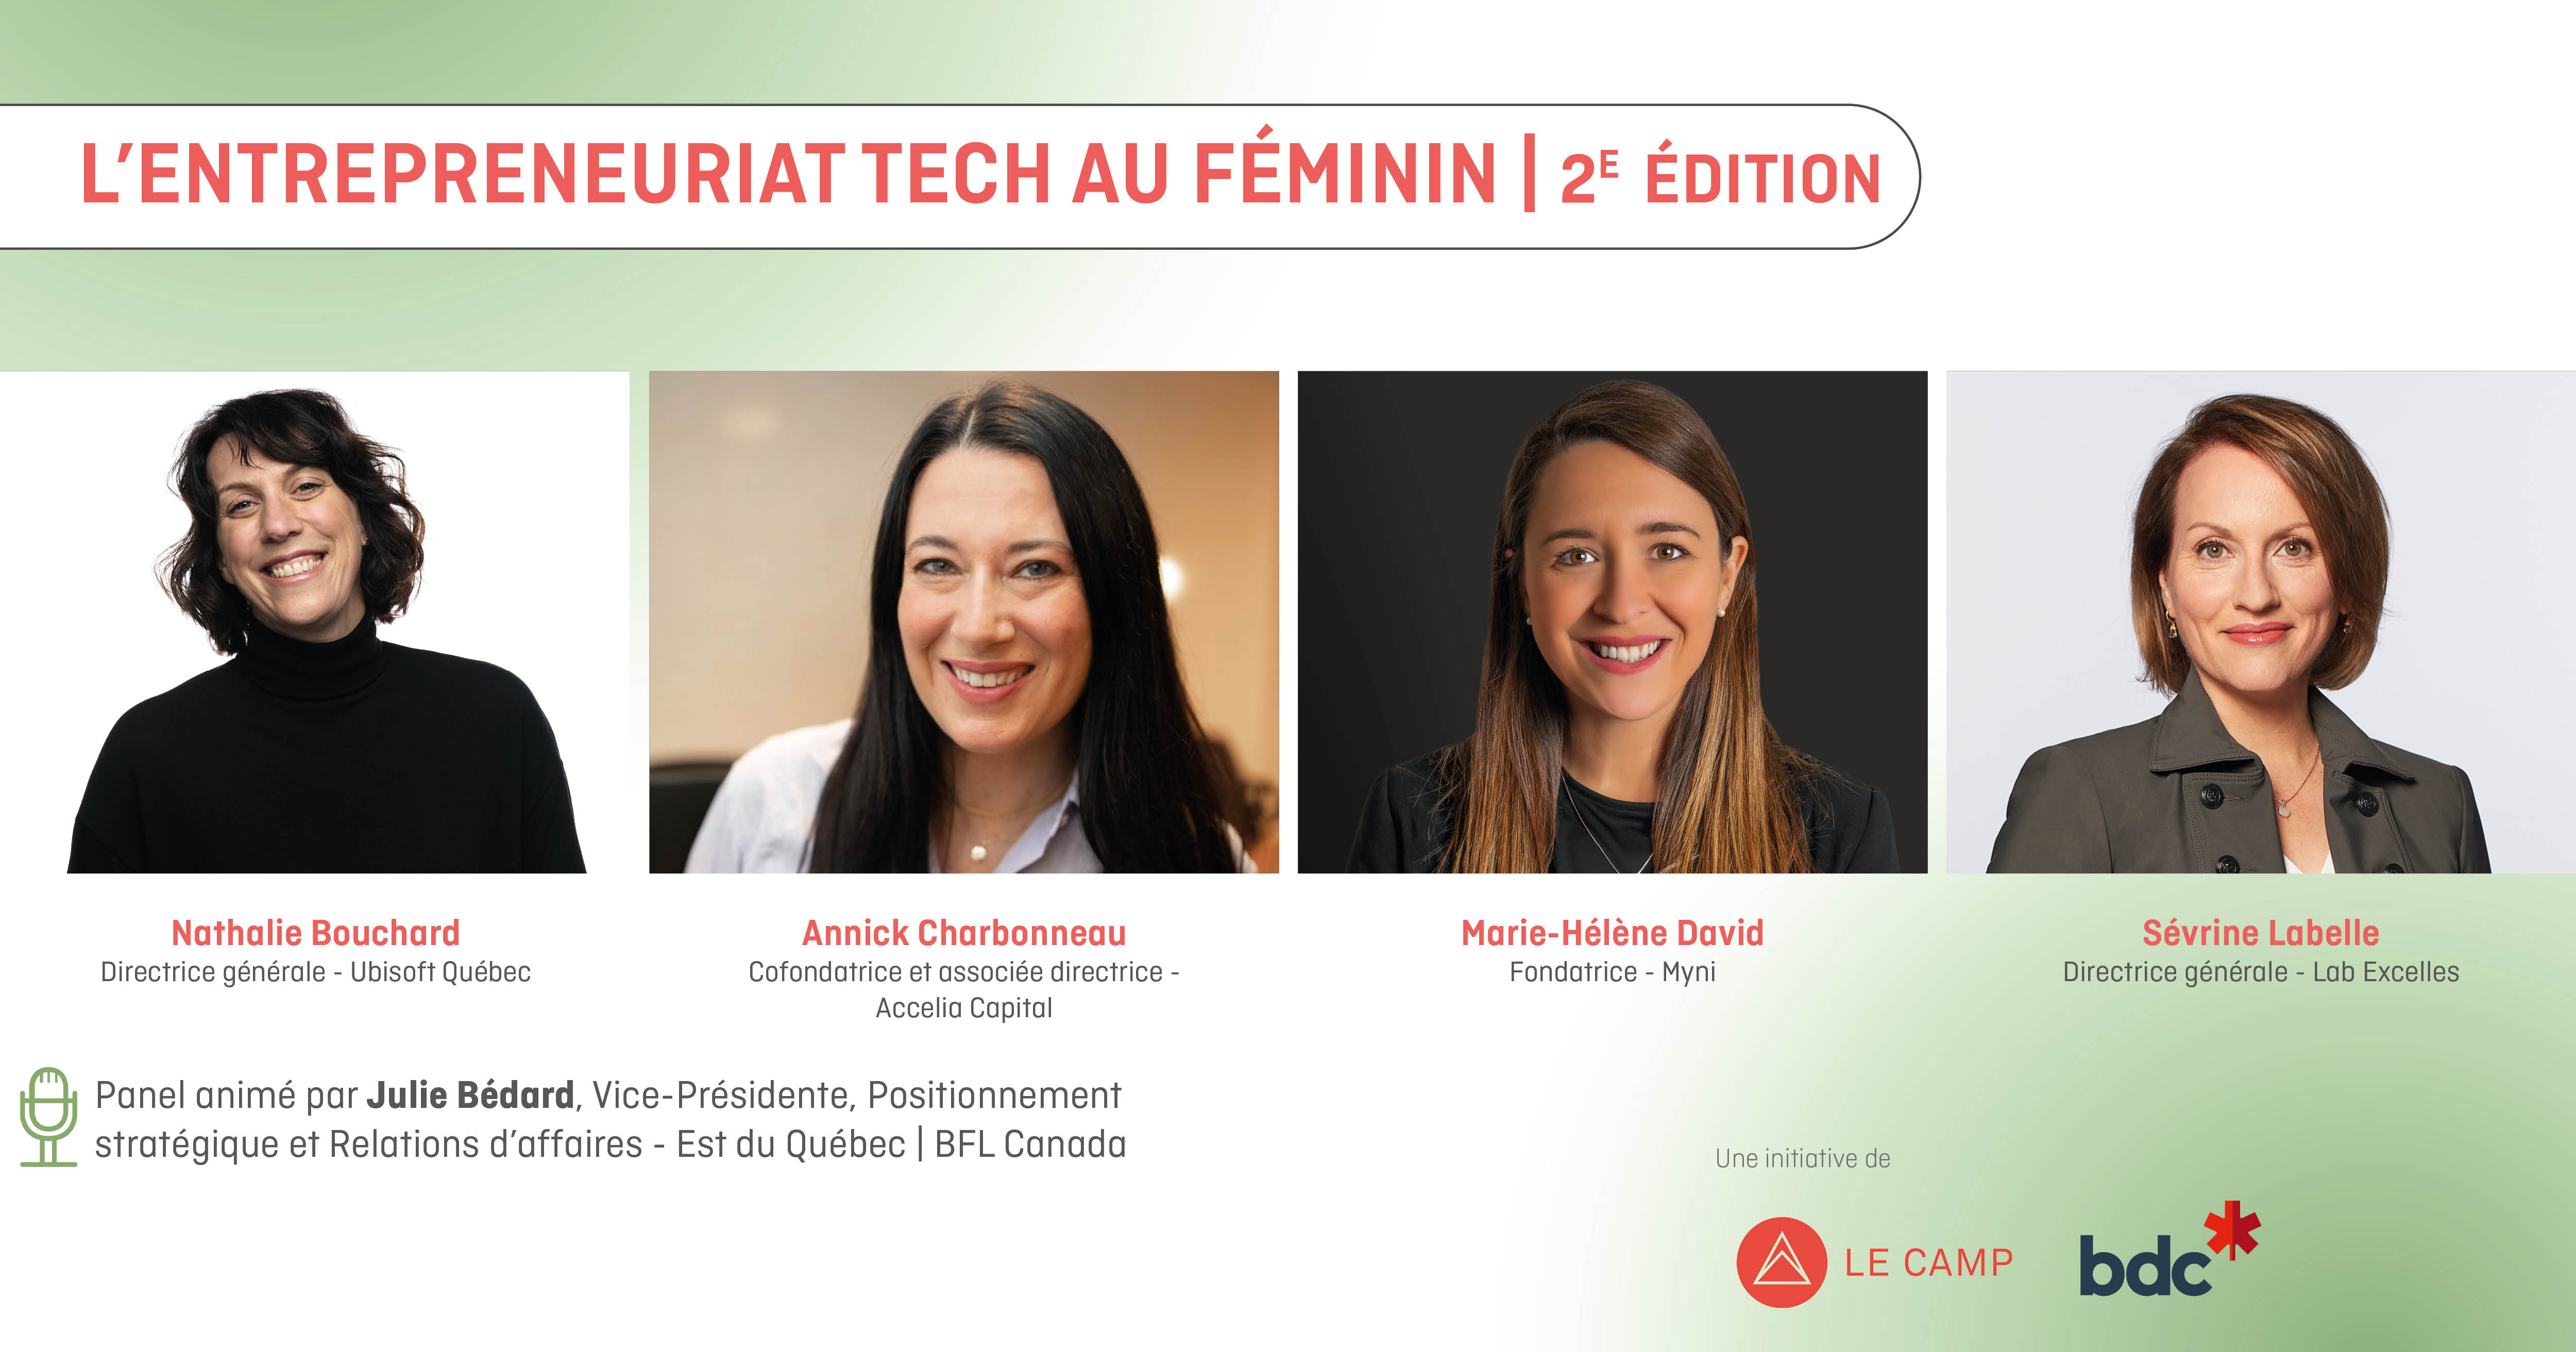 L'entrepreneuriat tech au féminin | 2e édition